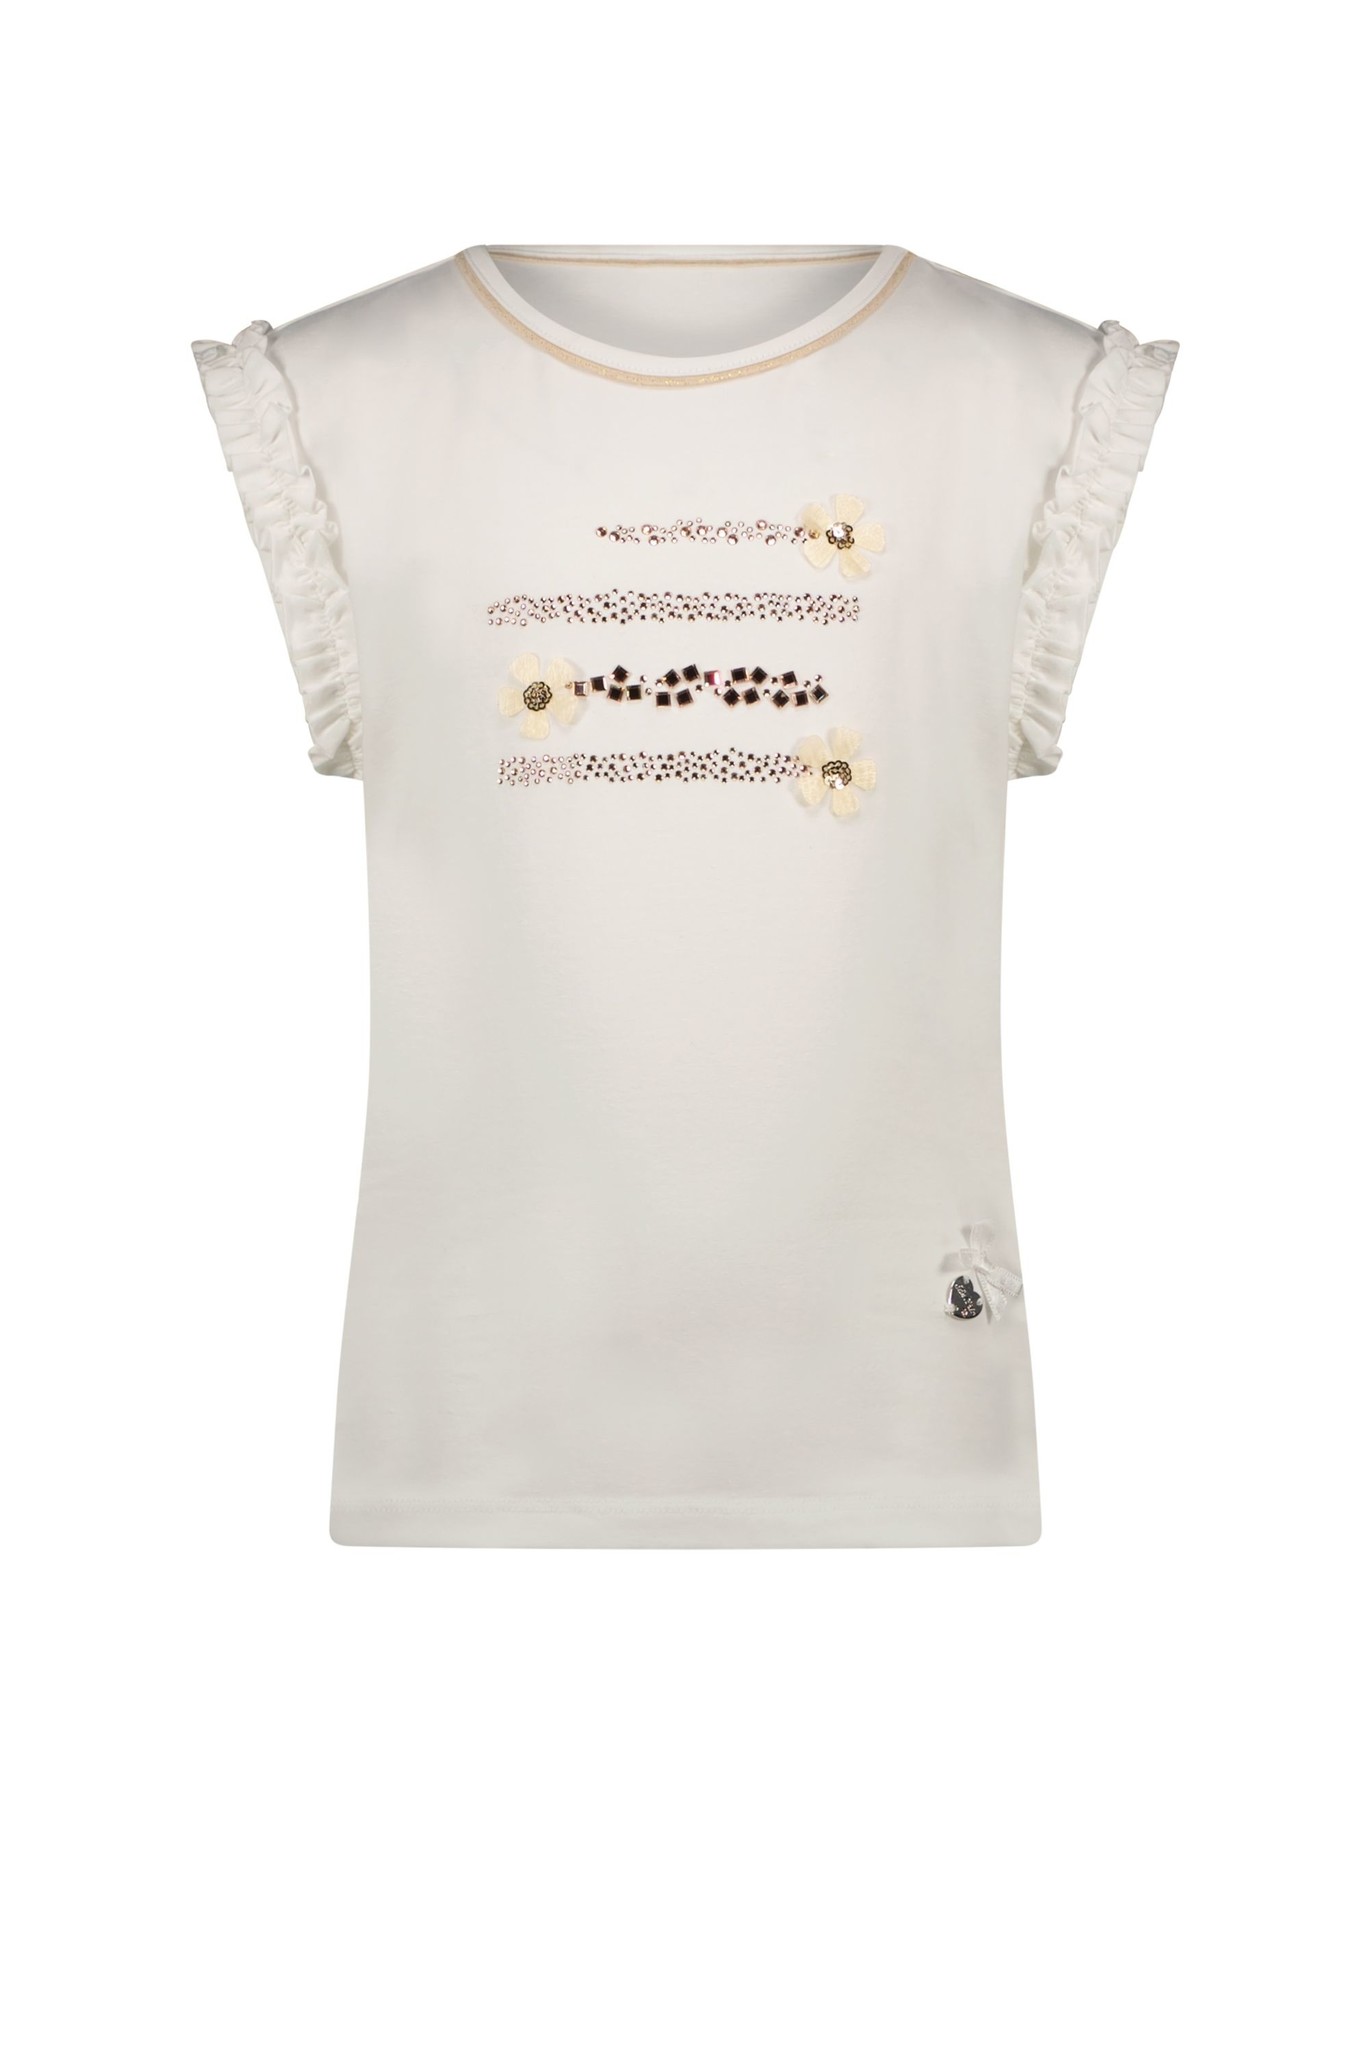 Le Chic Meisjes T-shirt NOPALY C212-5403 - Maat 110